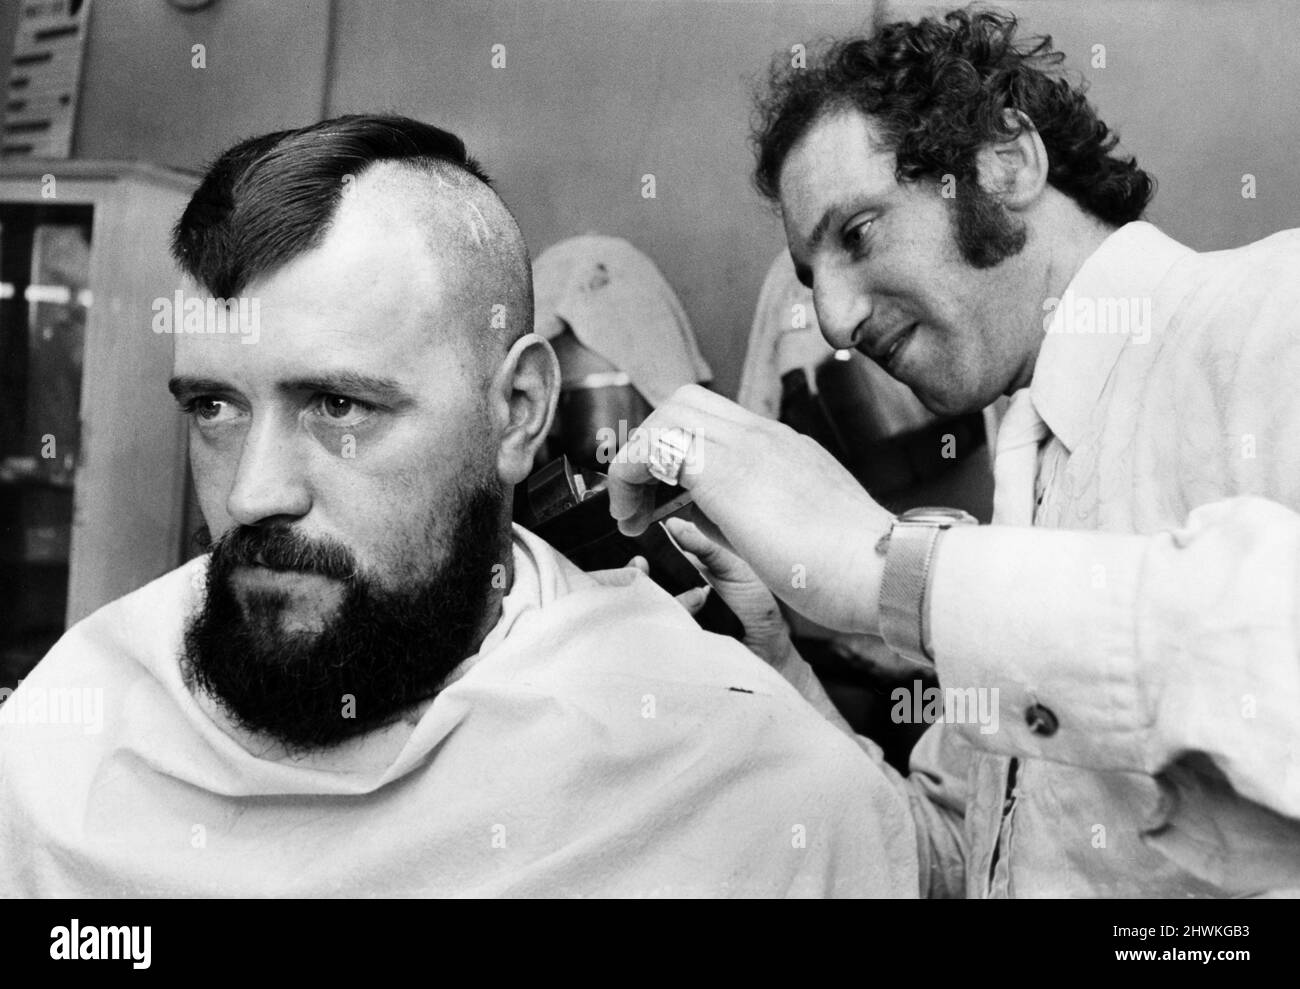 Daniel Ferran ein Gasfitter aus Glasgow bekommt einen mohican-Haarschnitt.29.. Mai 1972 Stockfoto